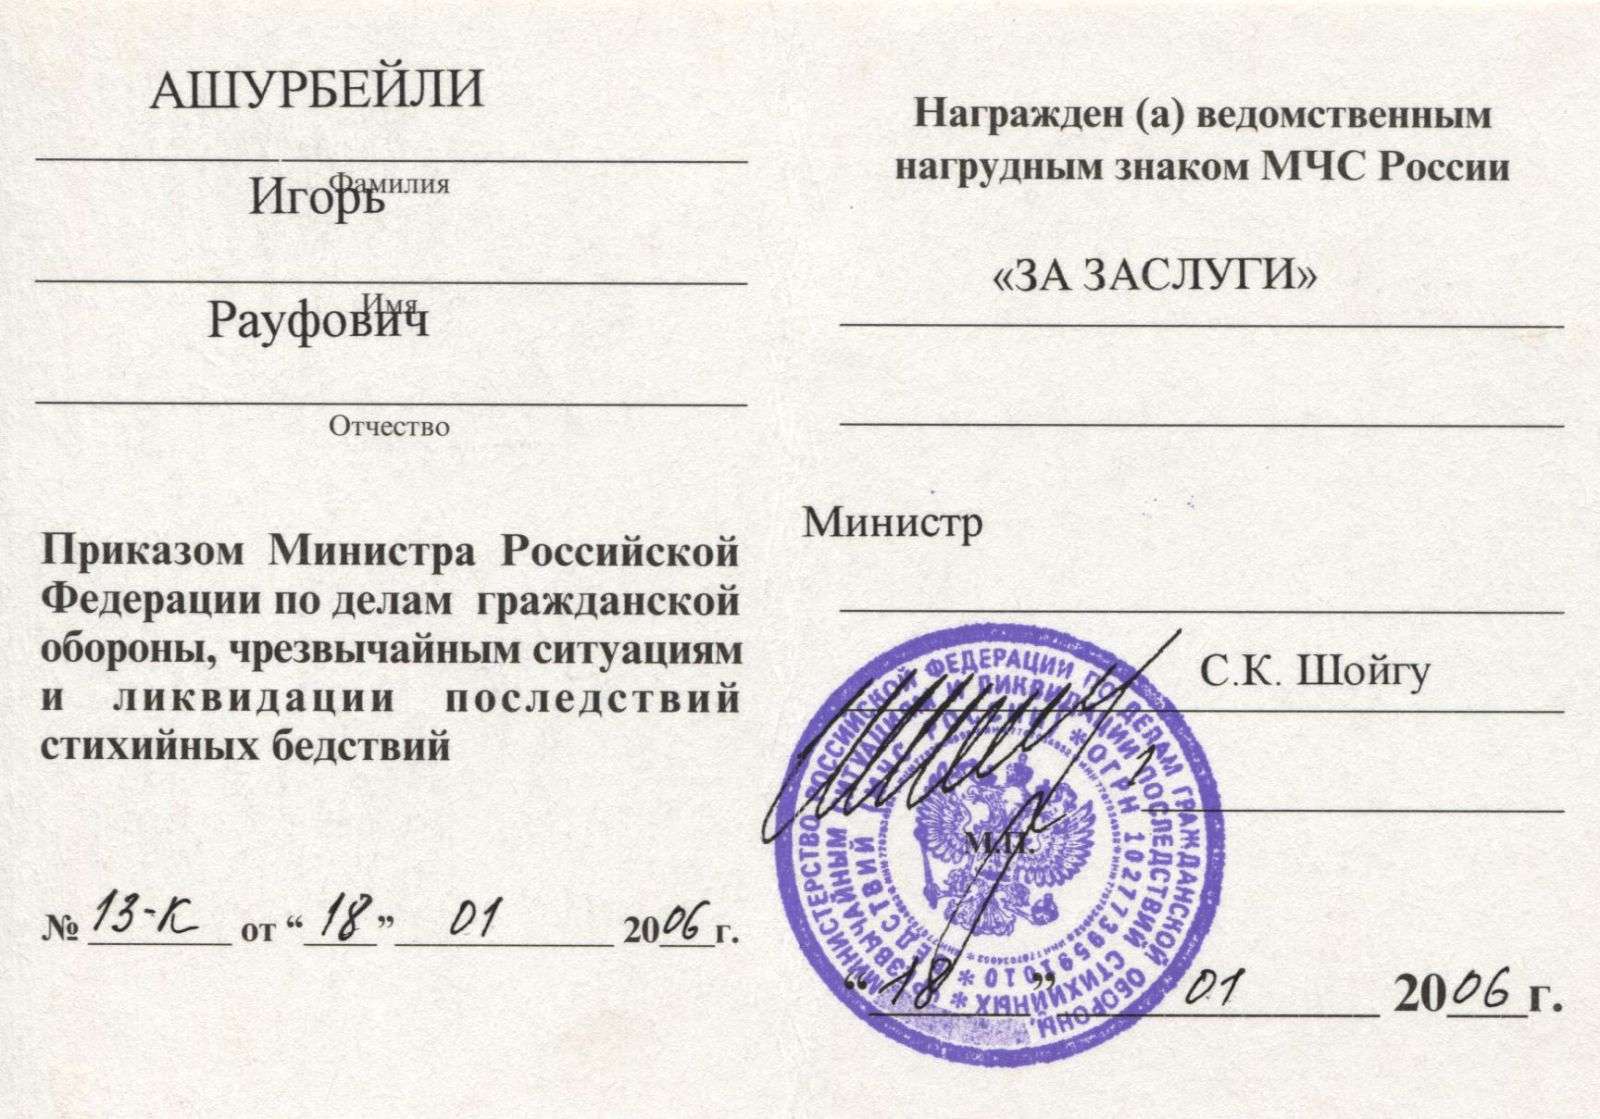 Знак МЧС России «За заслуги»